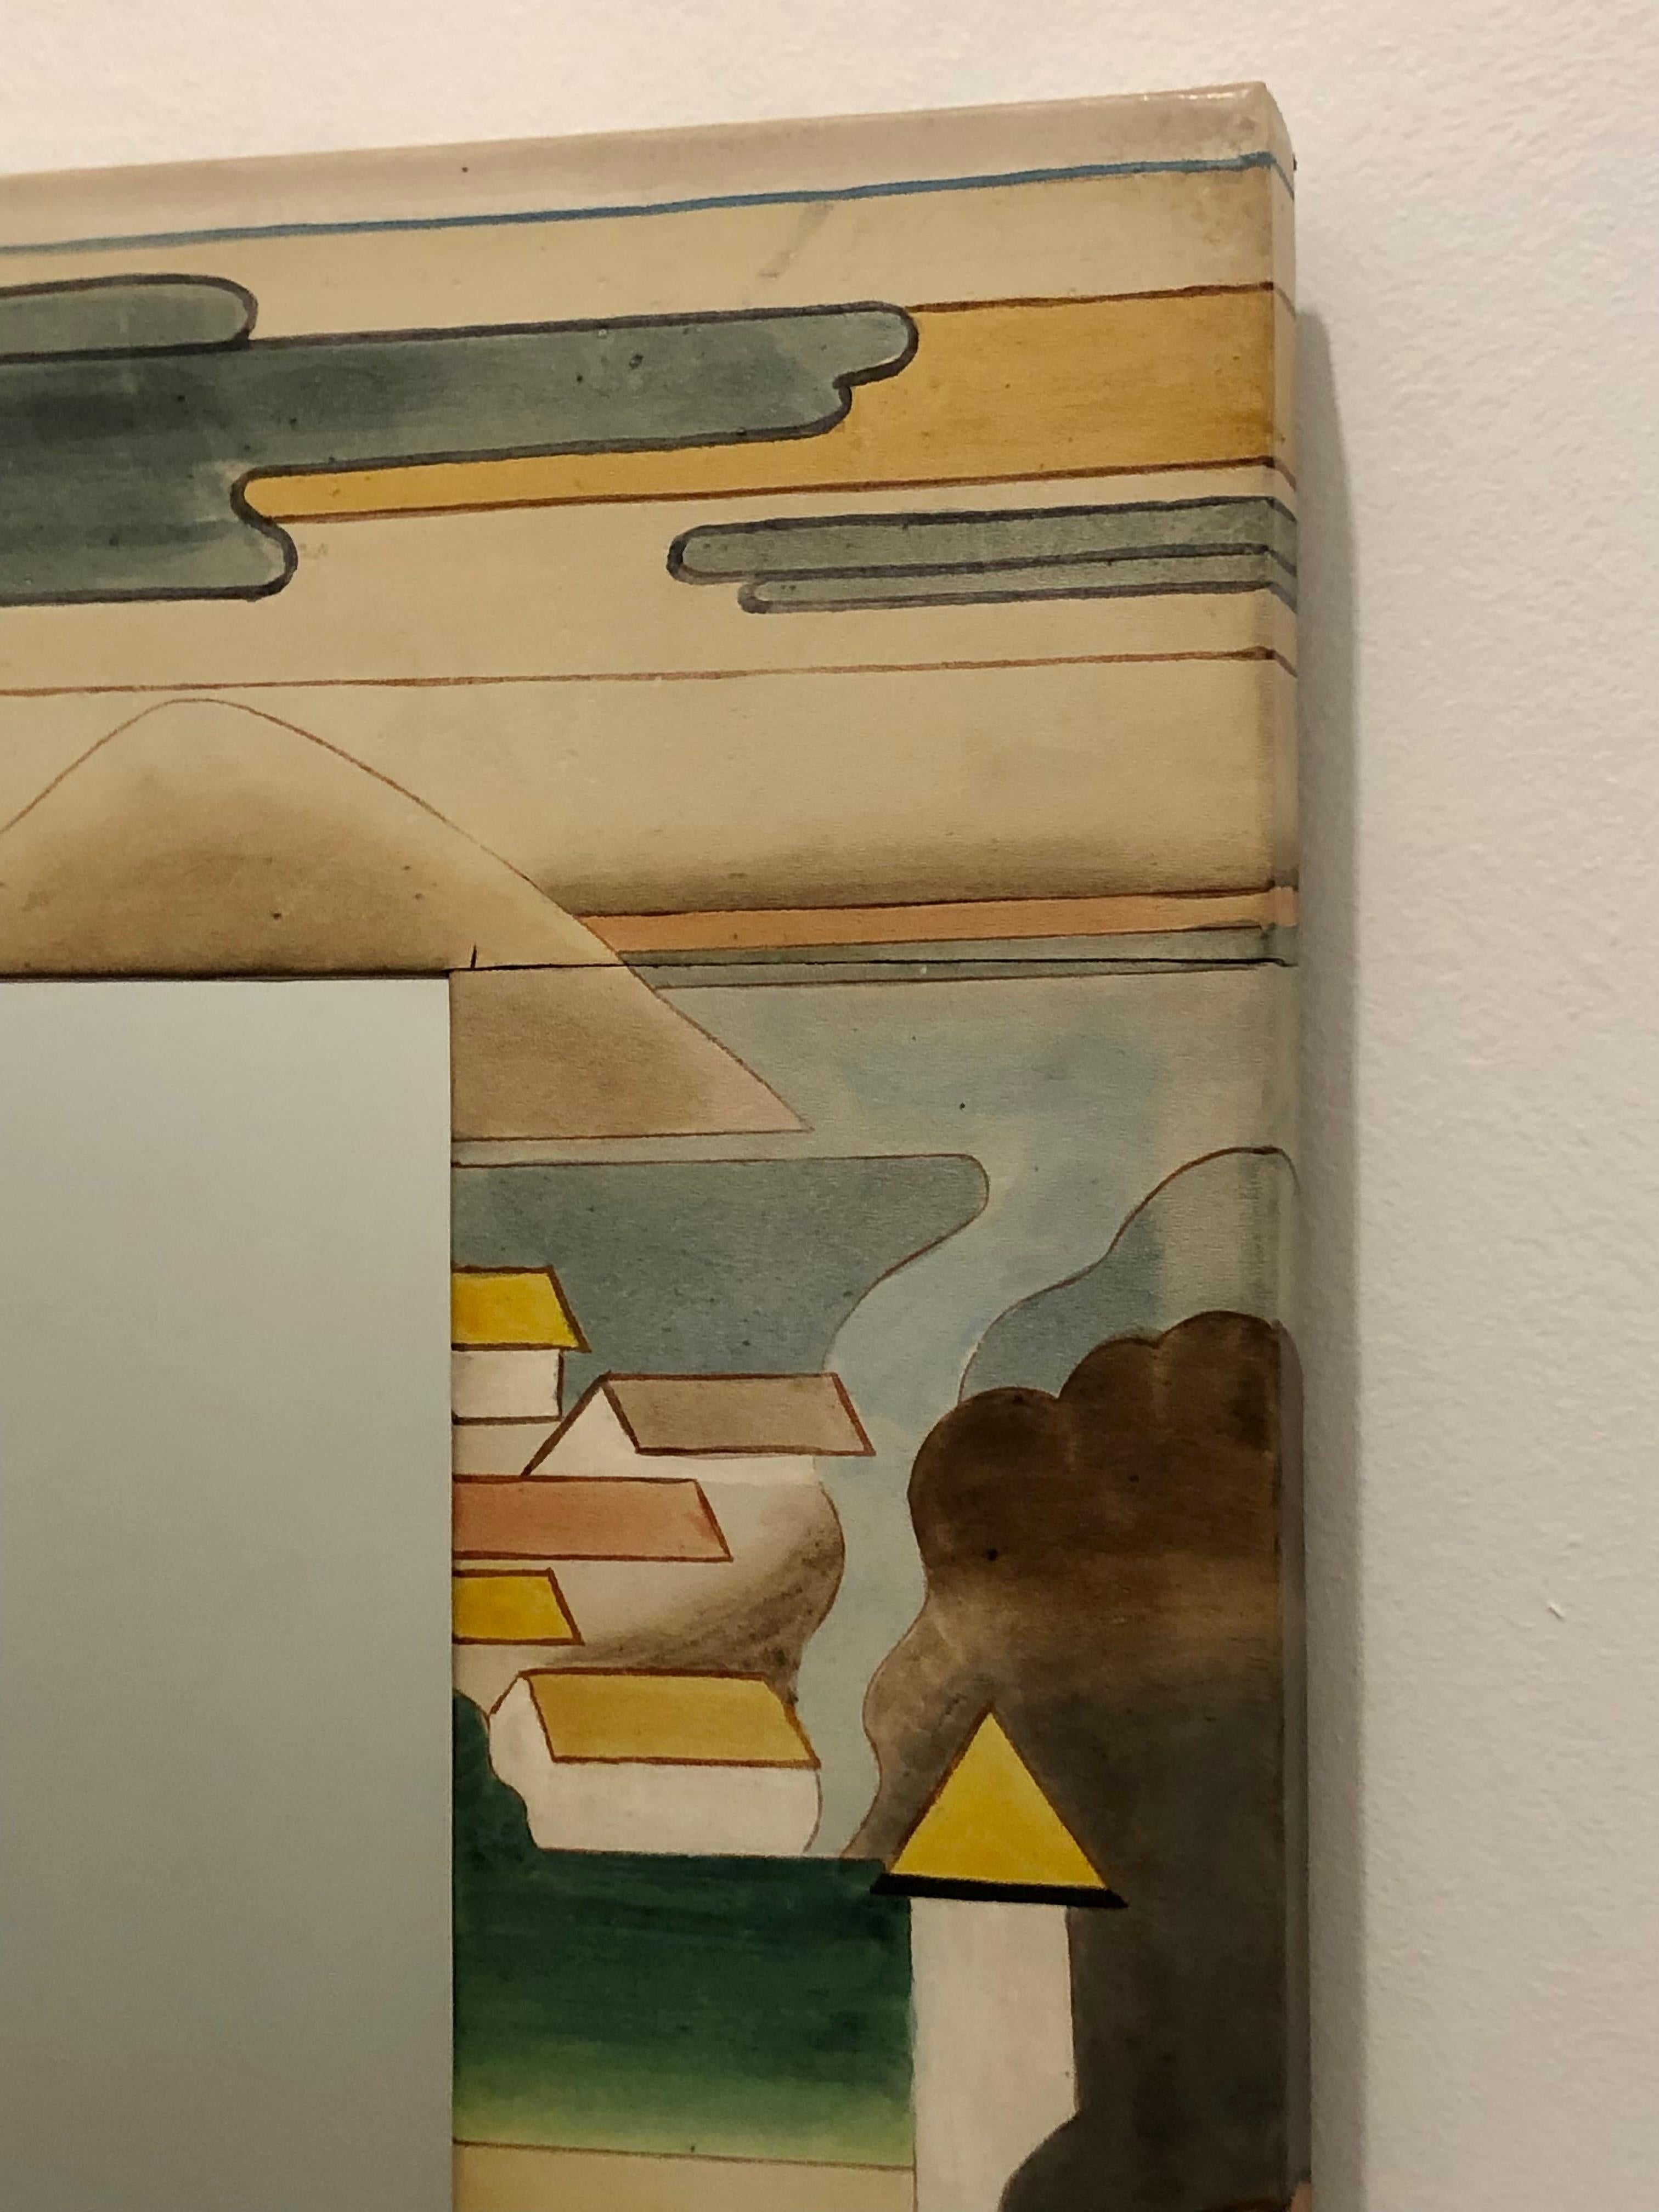 Miroir mural inhabituel du 20e siècle, vers 1980. Cuir peint à la main sur un cadre en bois. En parfait état, sans décoloration, fissures ou rayures.
Il s'agit d'une pièce magnifique avec des images stylisées d'arbres et de maisons de village. Son